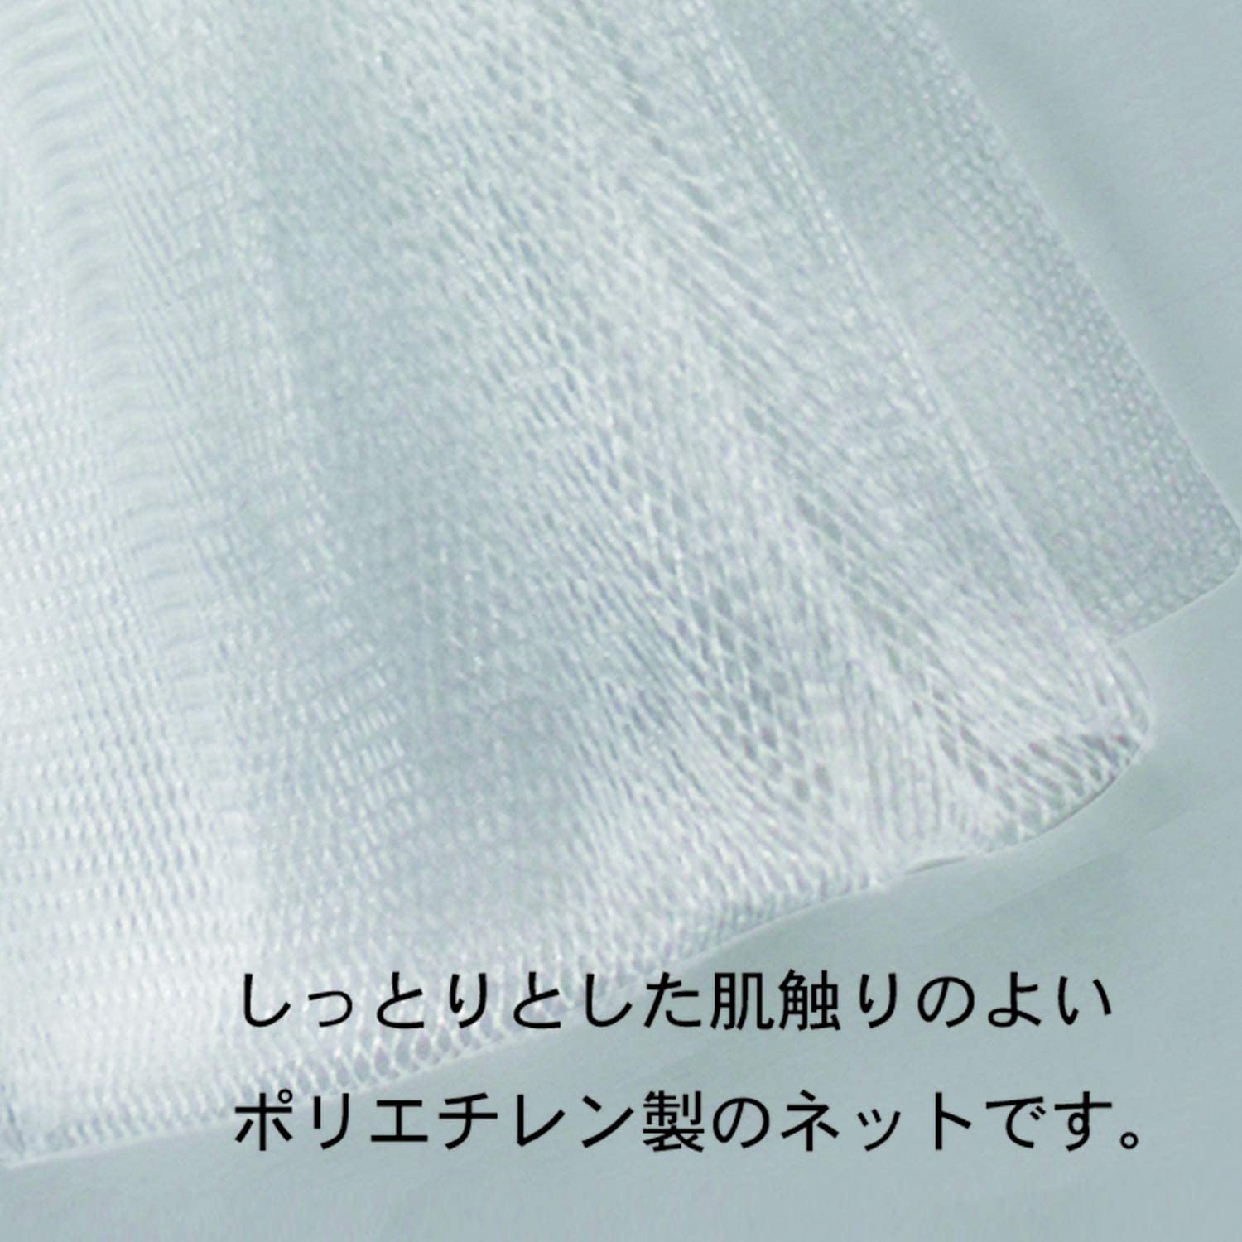 小久保工業所(KOKUBO) ホイップ洗顔の商品画像4 